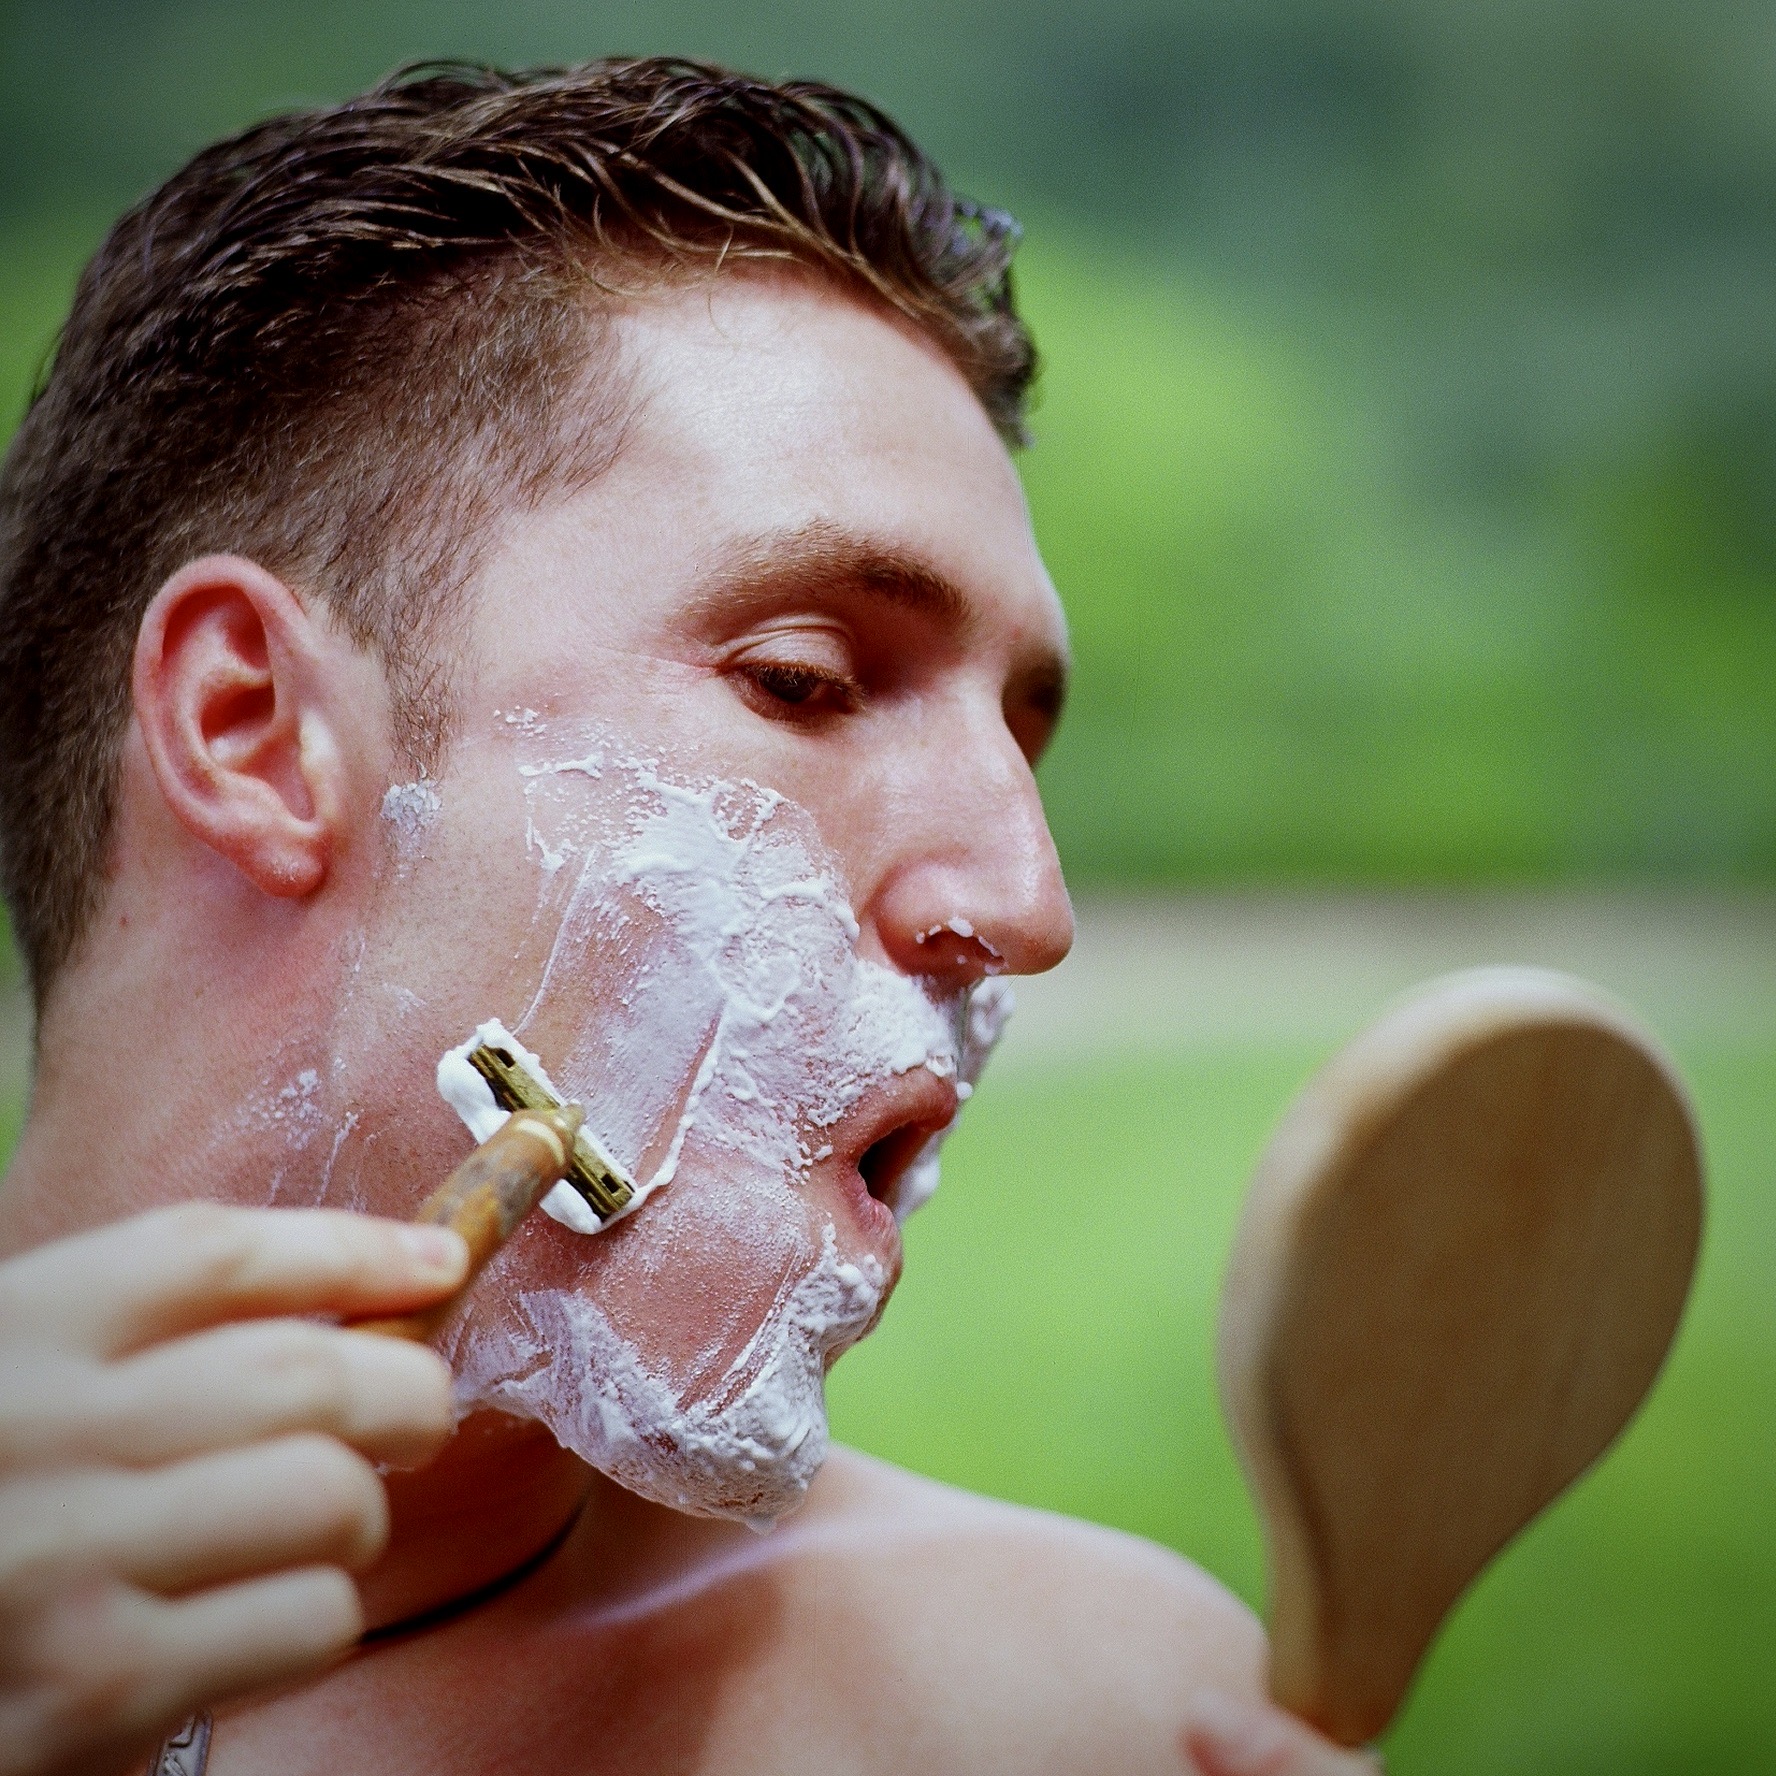 Benefits of wet shaving